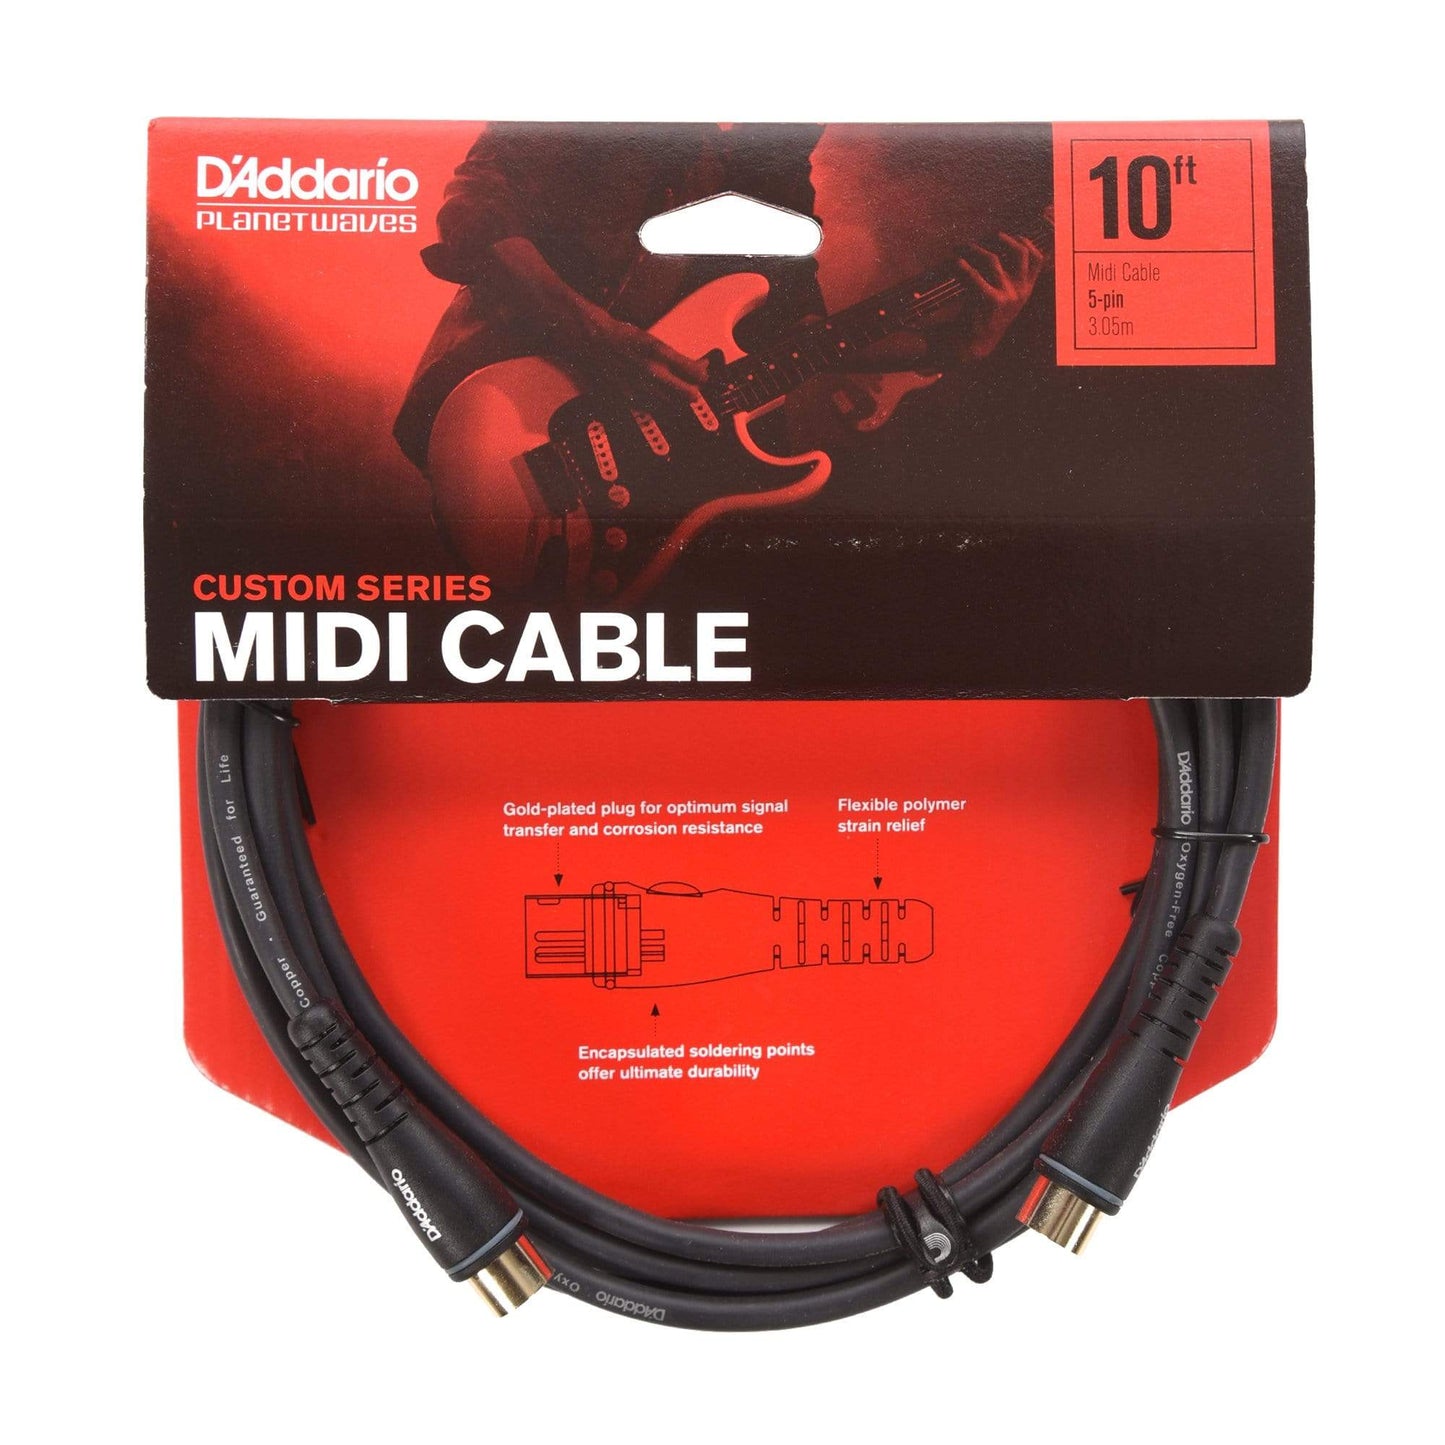 D'Addario Custom MIDI Cable 10' Accessories / Cables